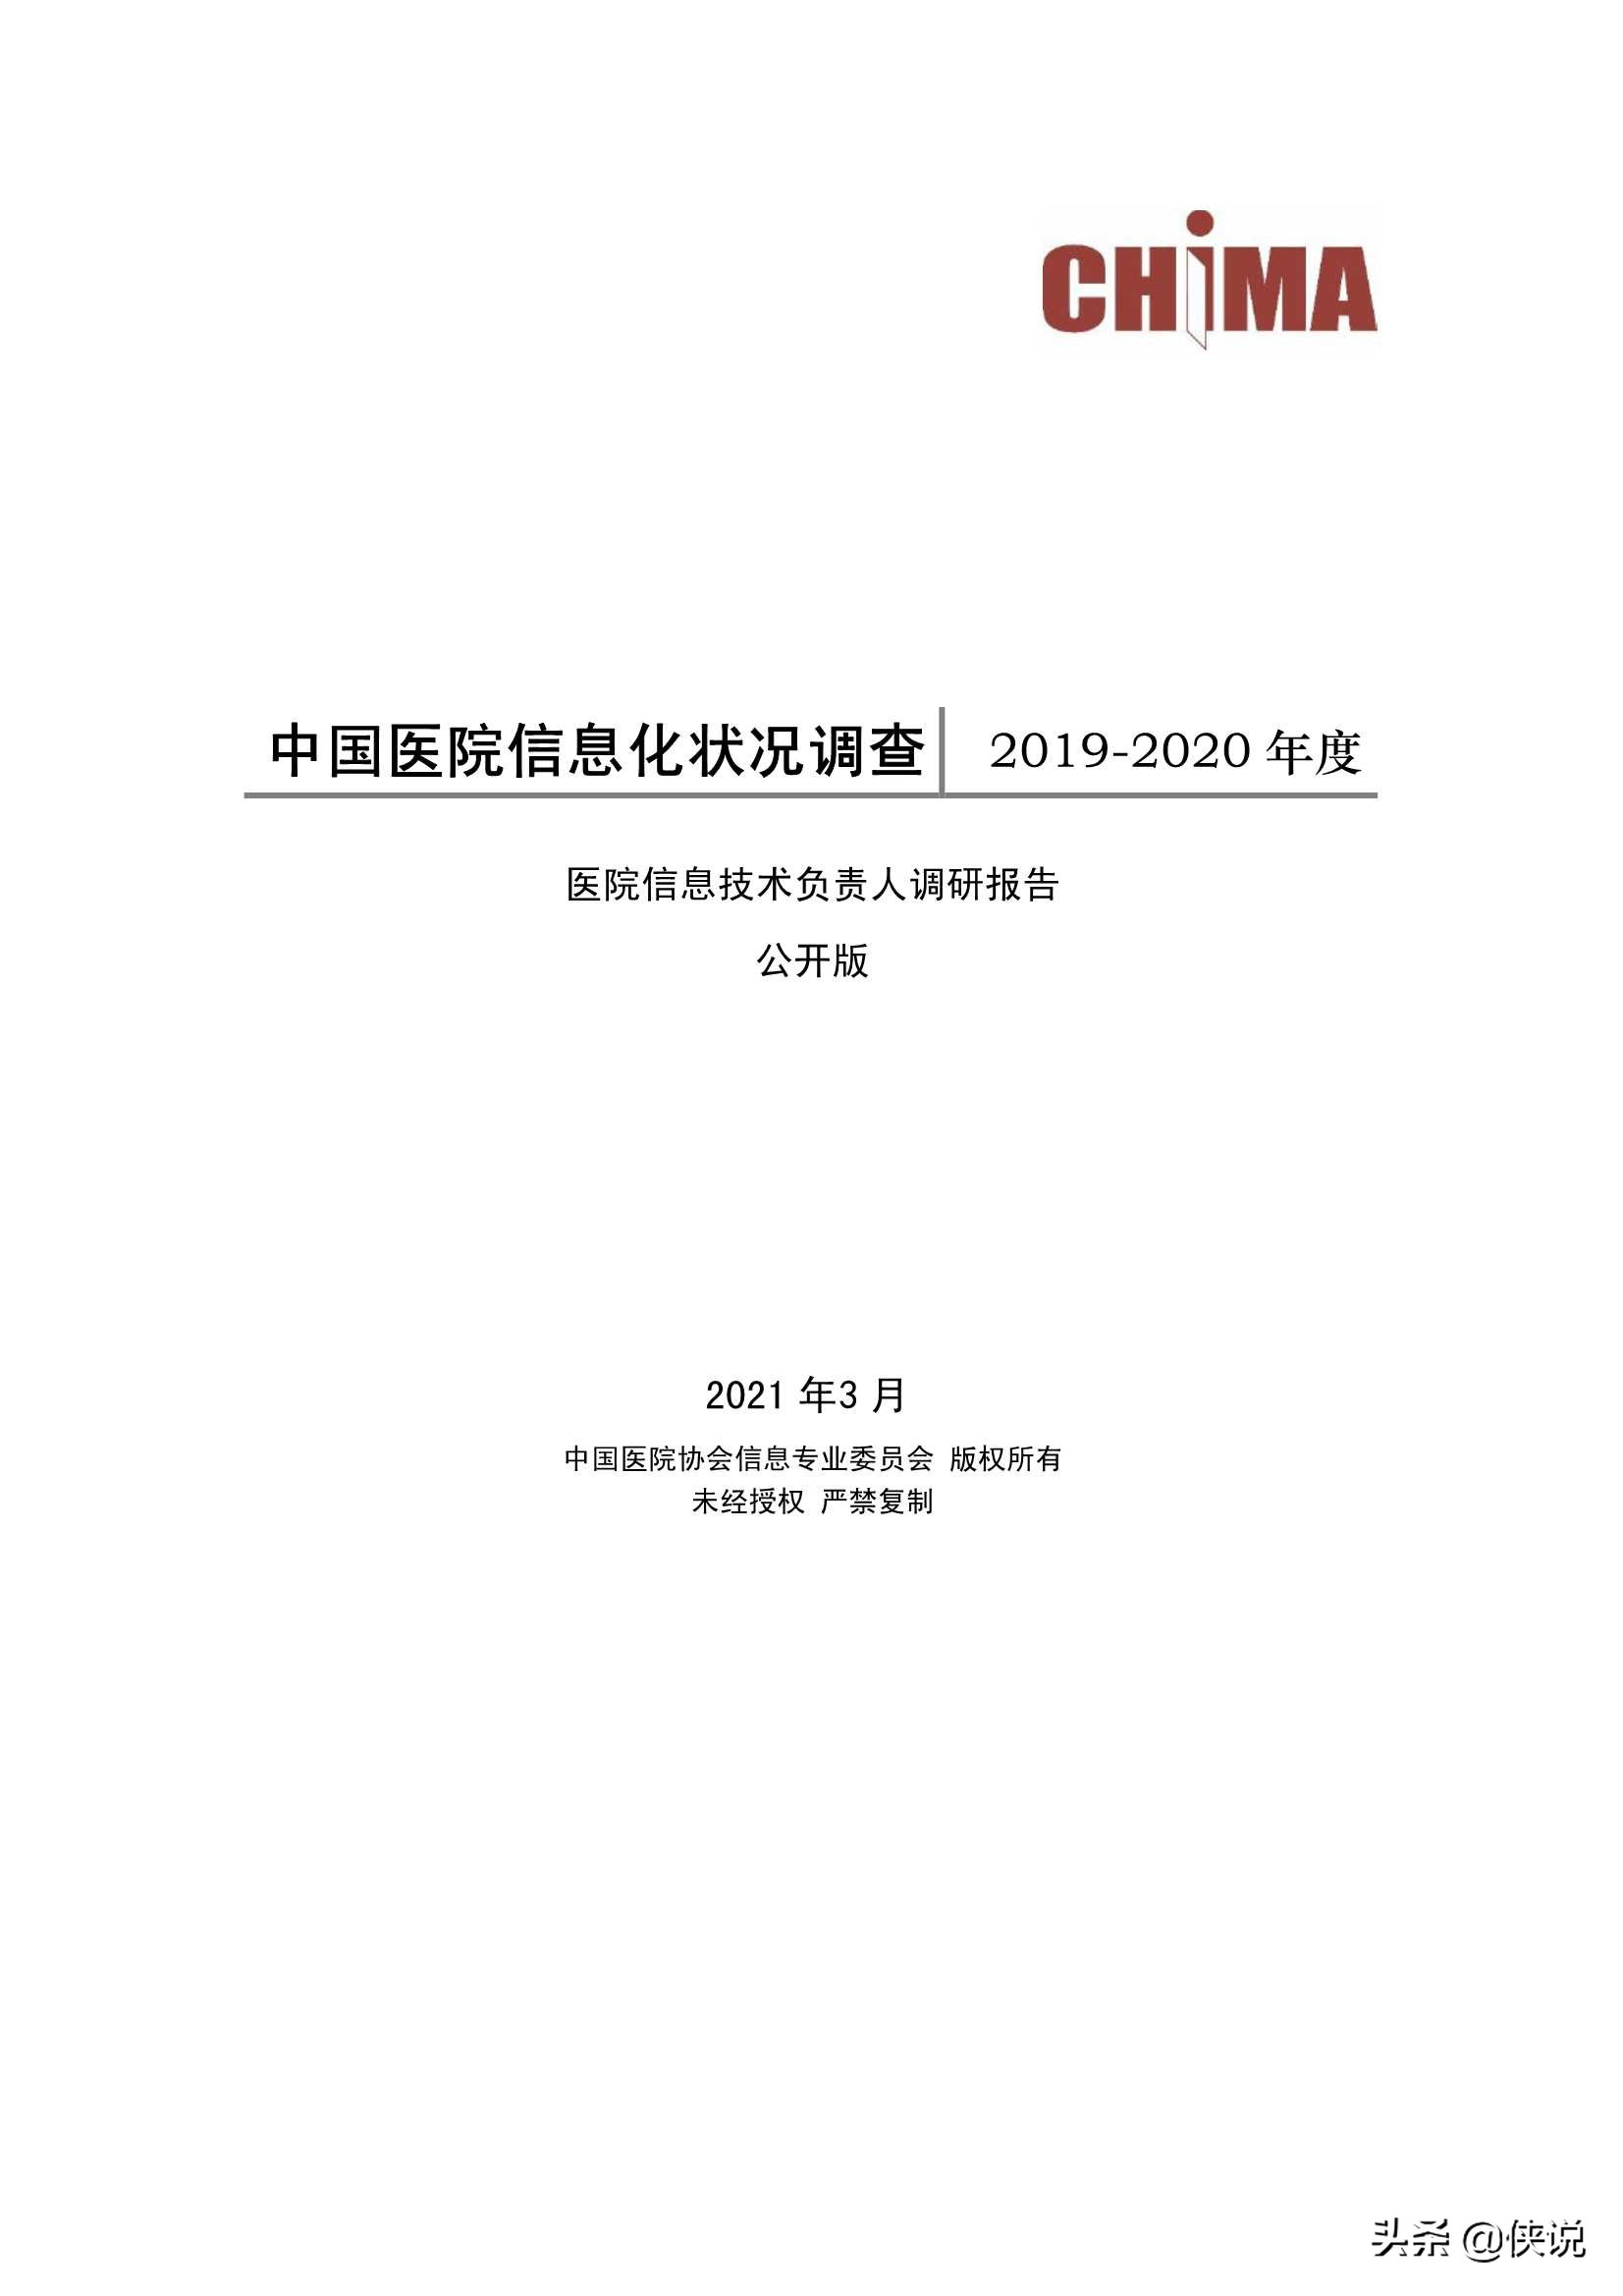 2019-2020中国医院信息化状况调查报告